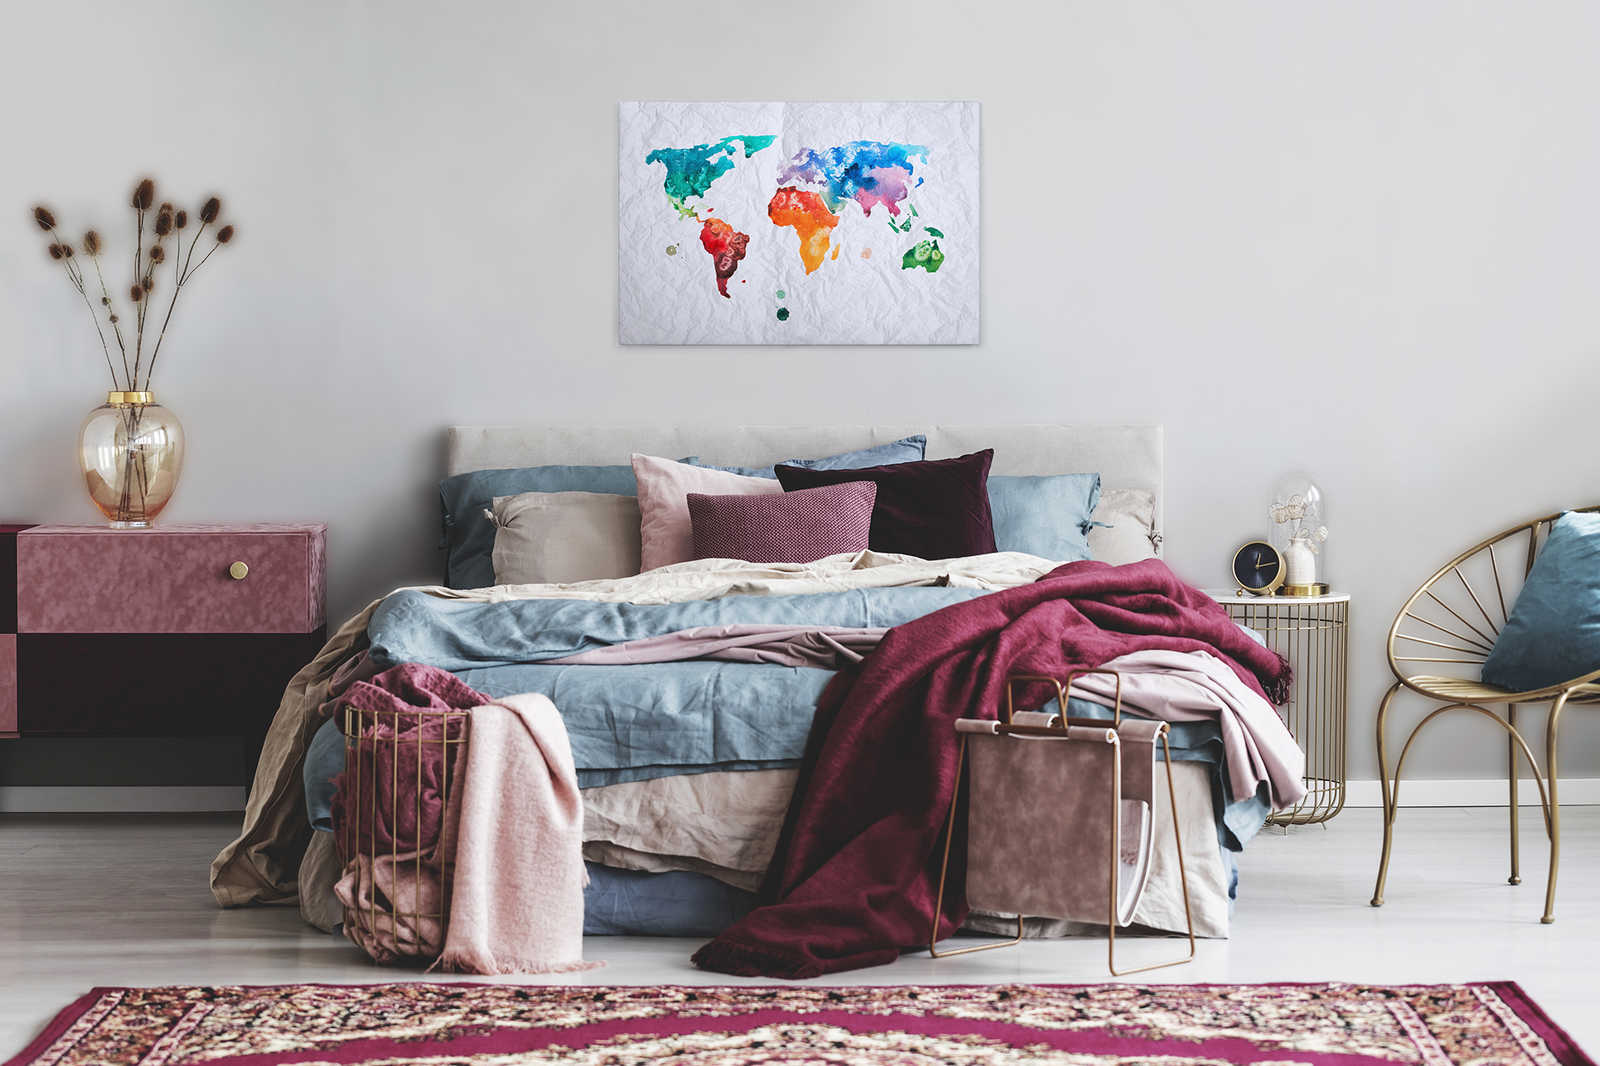             Carte du monde toile aquarelle - 0,90 m x 0,60 m
        